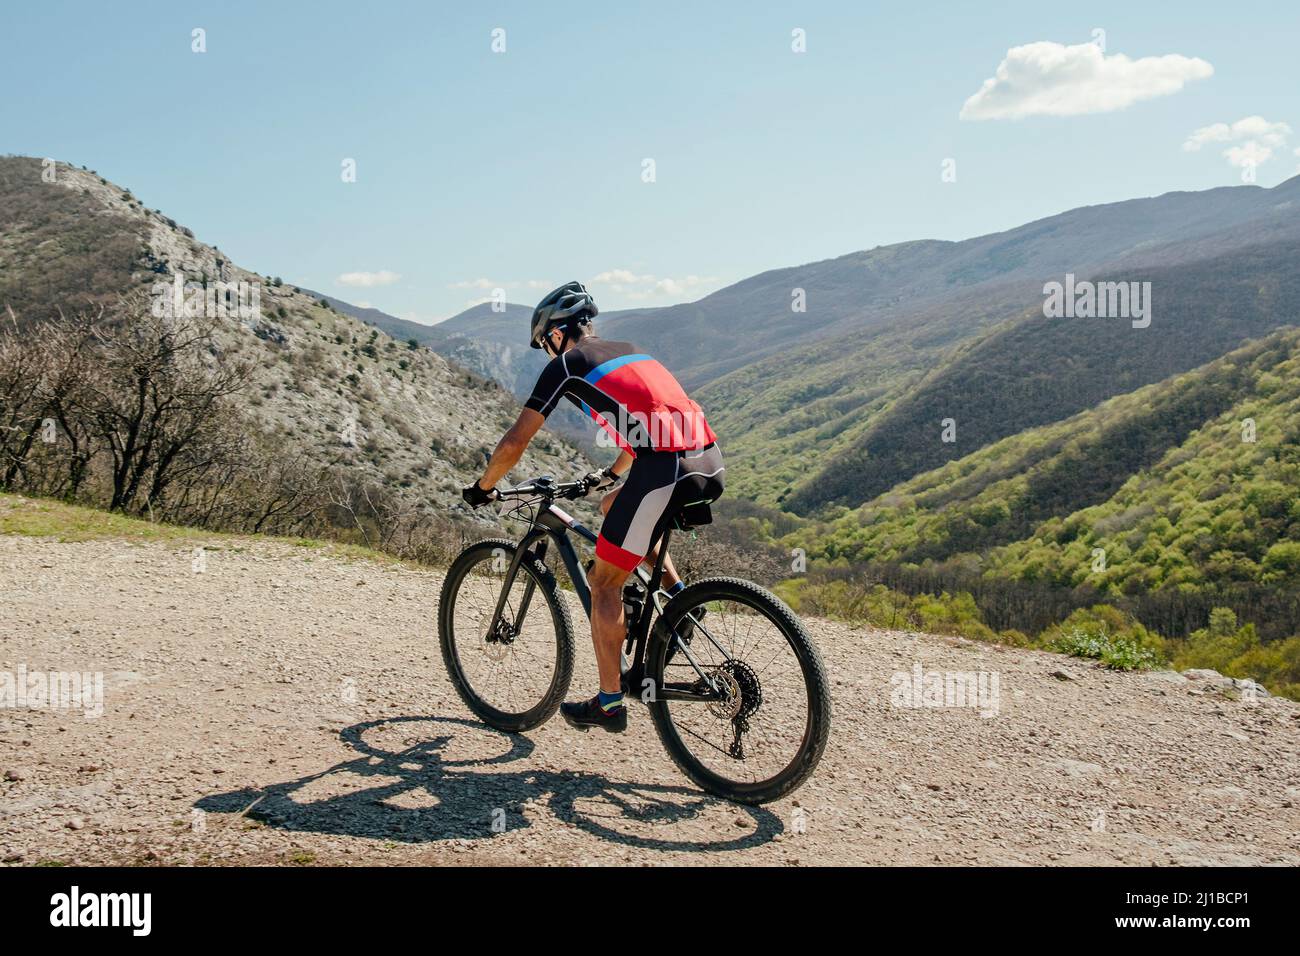 athlete cyclist riding mountain bike on mountain trail Stock Photo